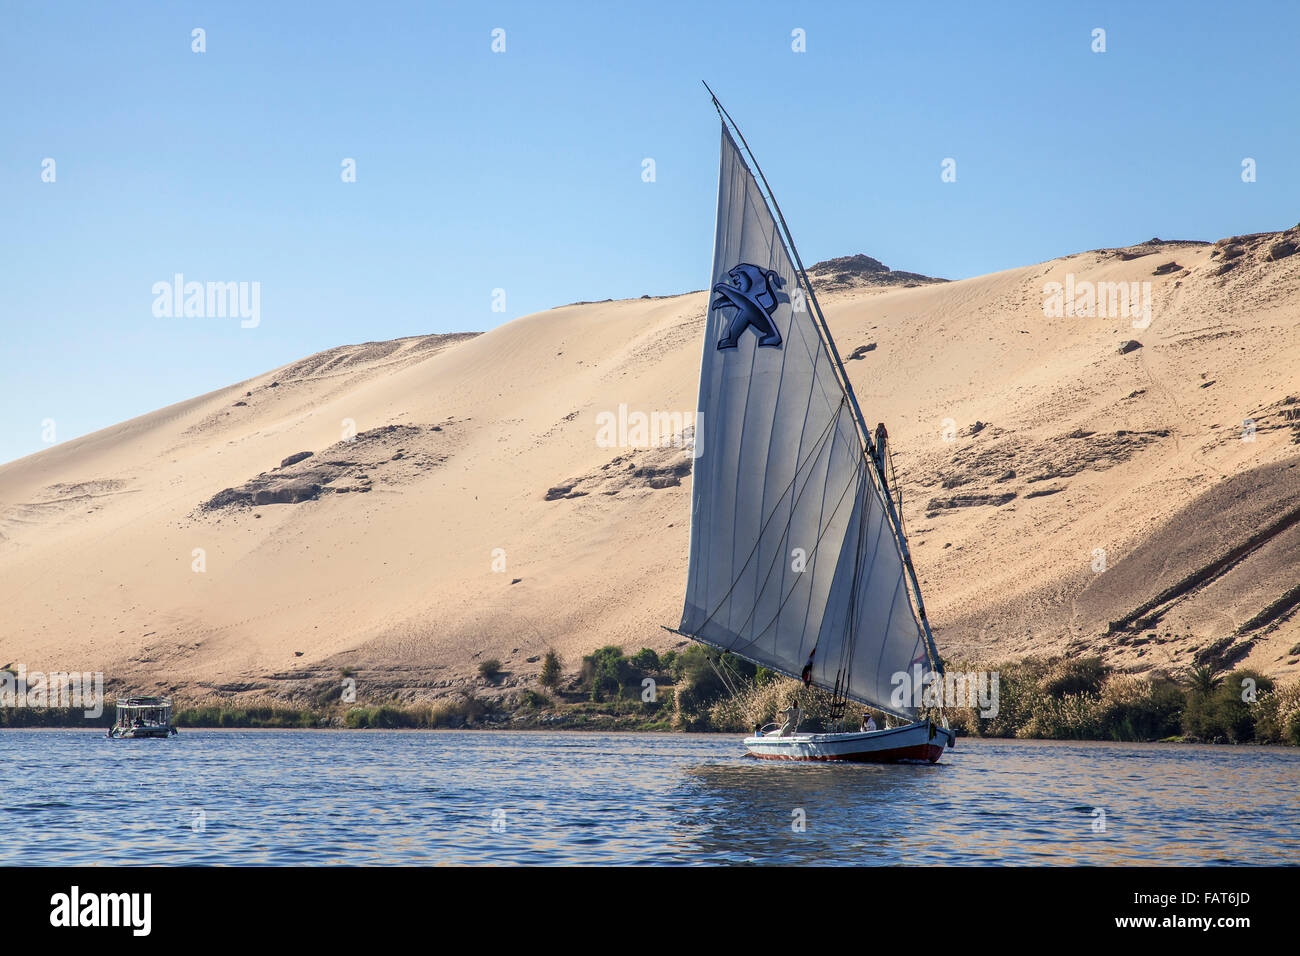 Felouque, traditionnel en bateau à voile sur le Nil près d'Assouan Egypte du sud Banque D'Images